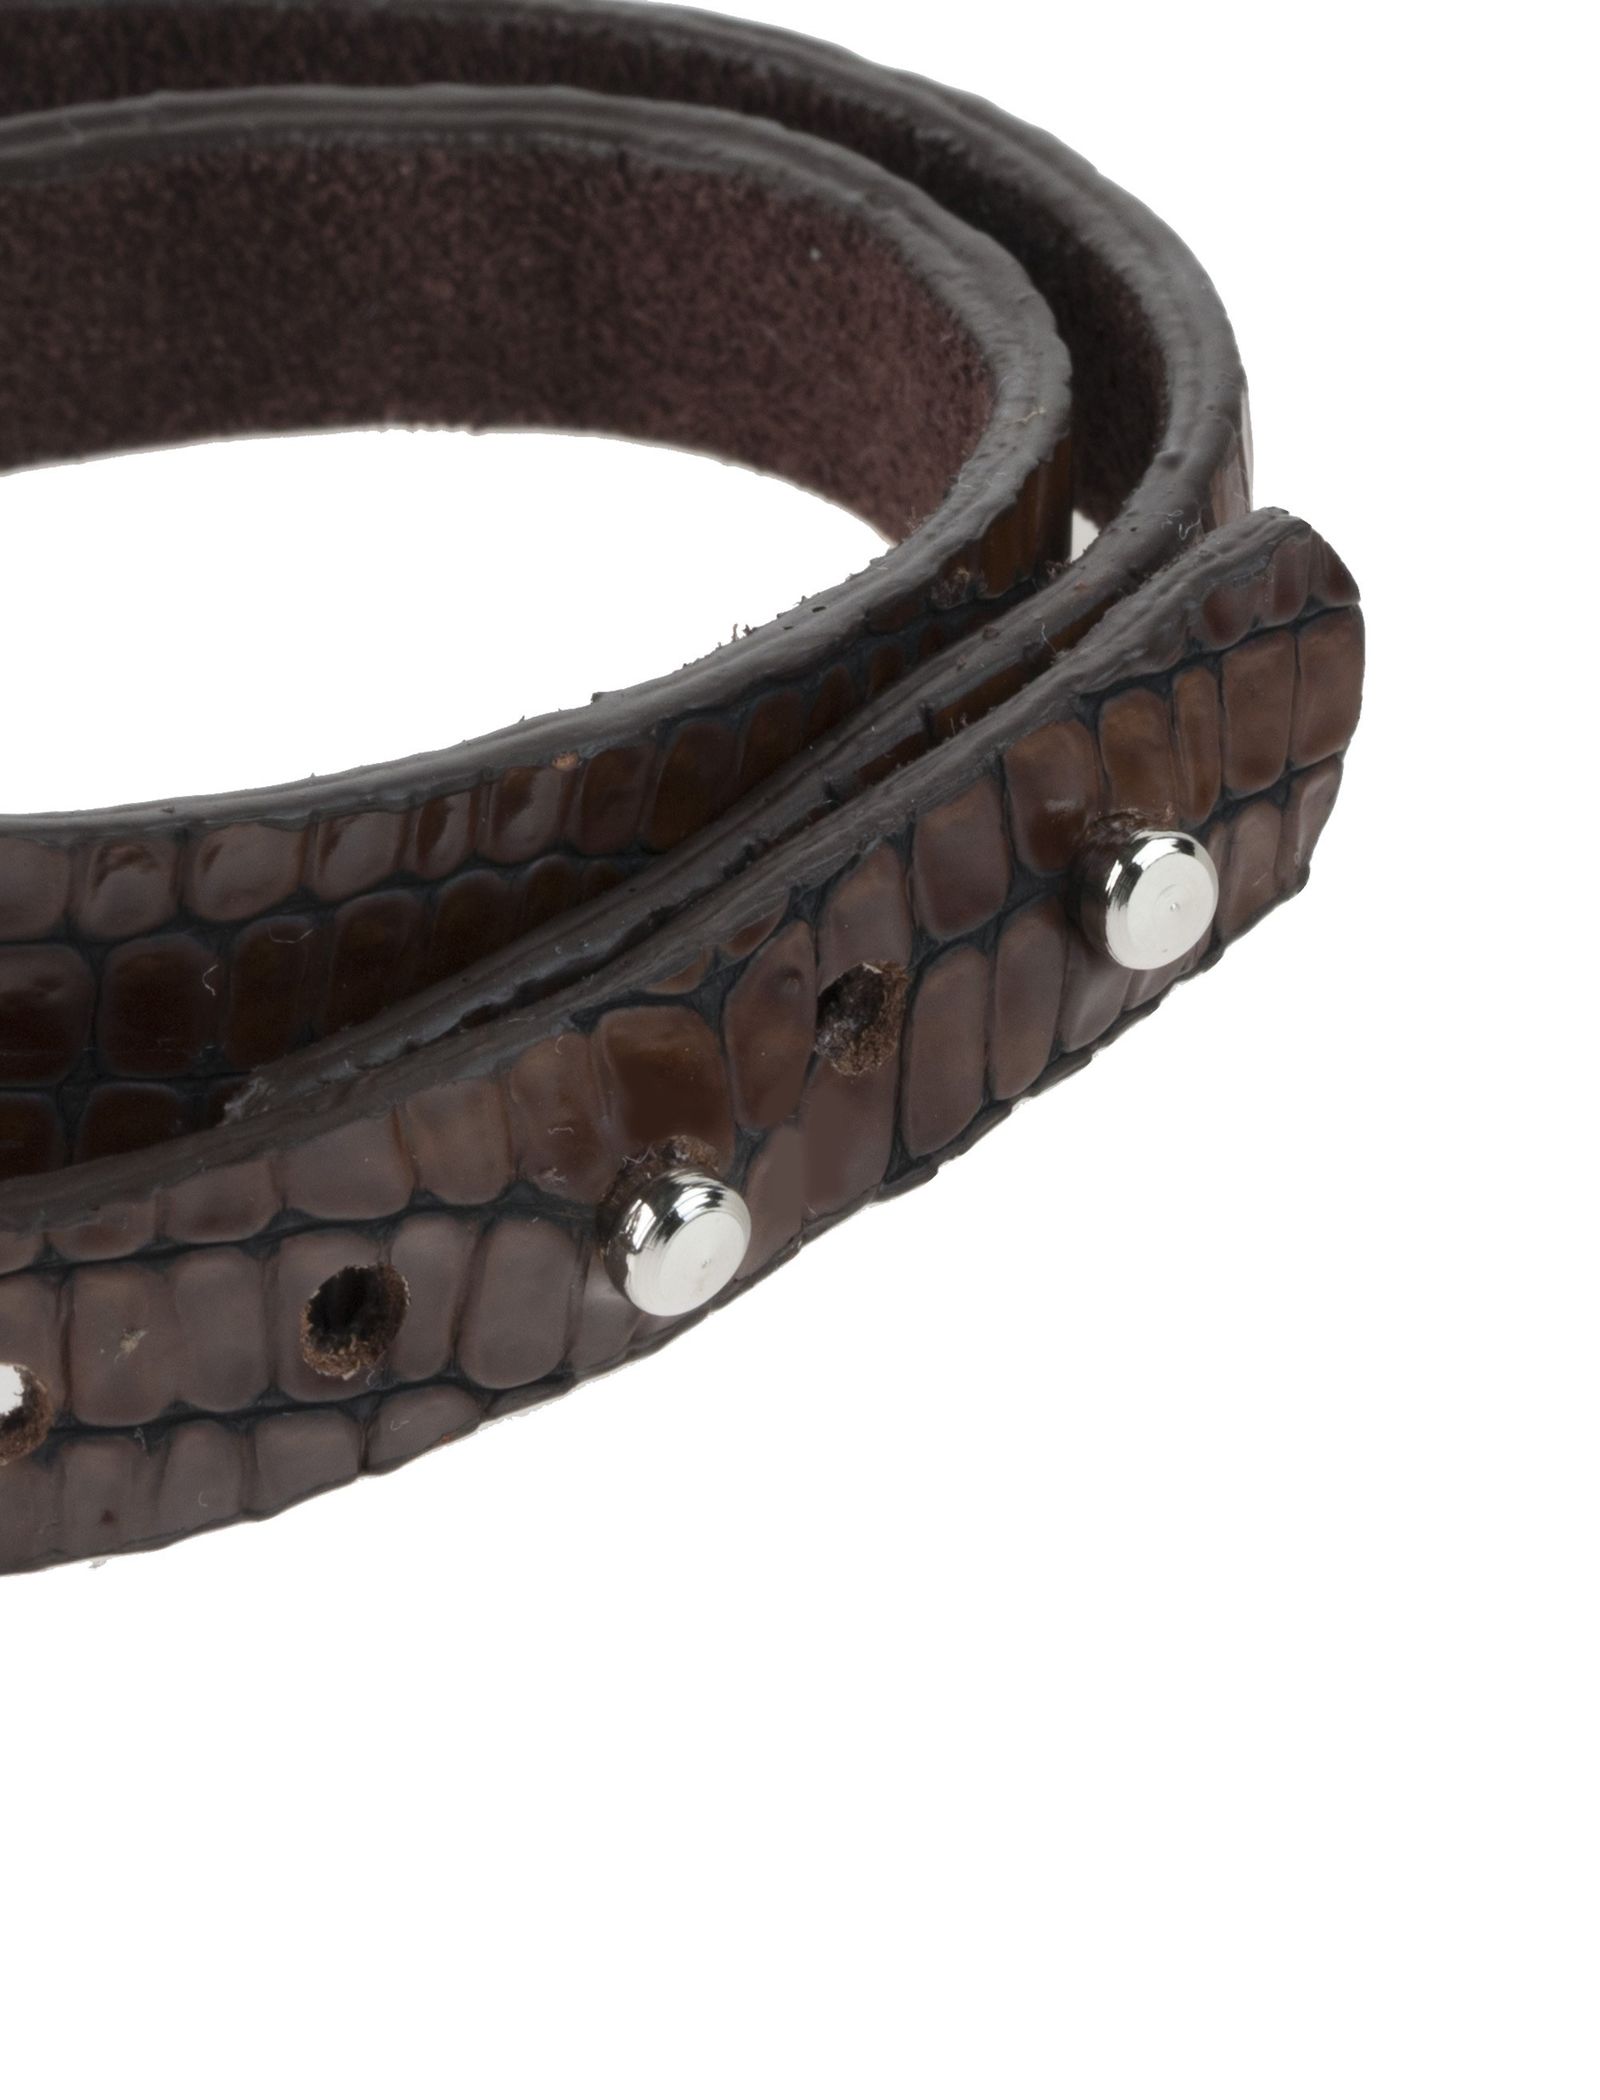 دستبند چرم مردانه - ماکو دیزاین سایز 43 cm - قهوه اي - 5